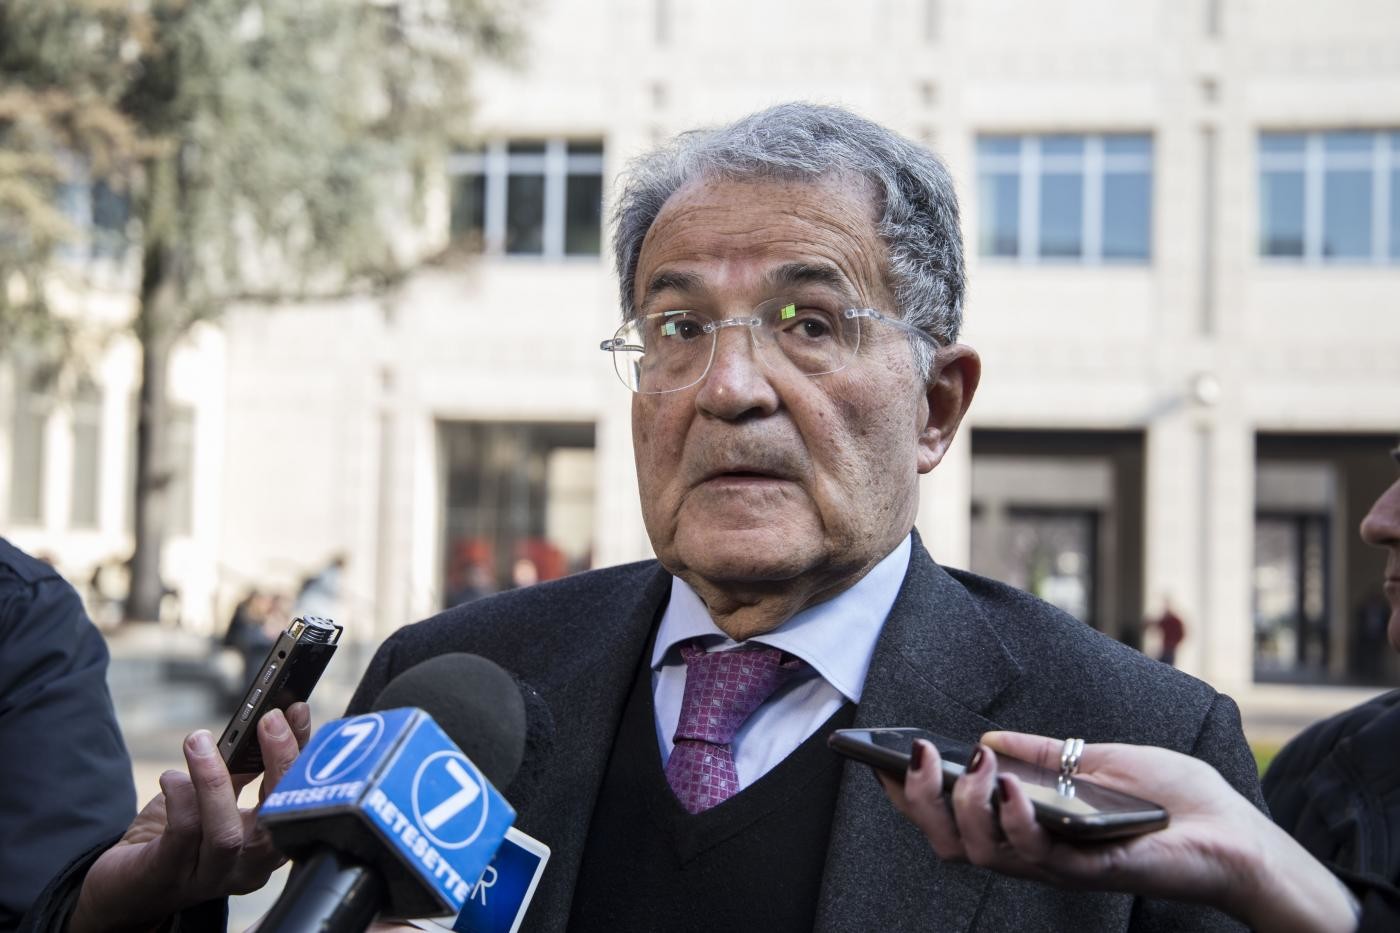 Governo, Prodi: “L’Italia rischia di diventare una democrazia illiberale”